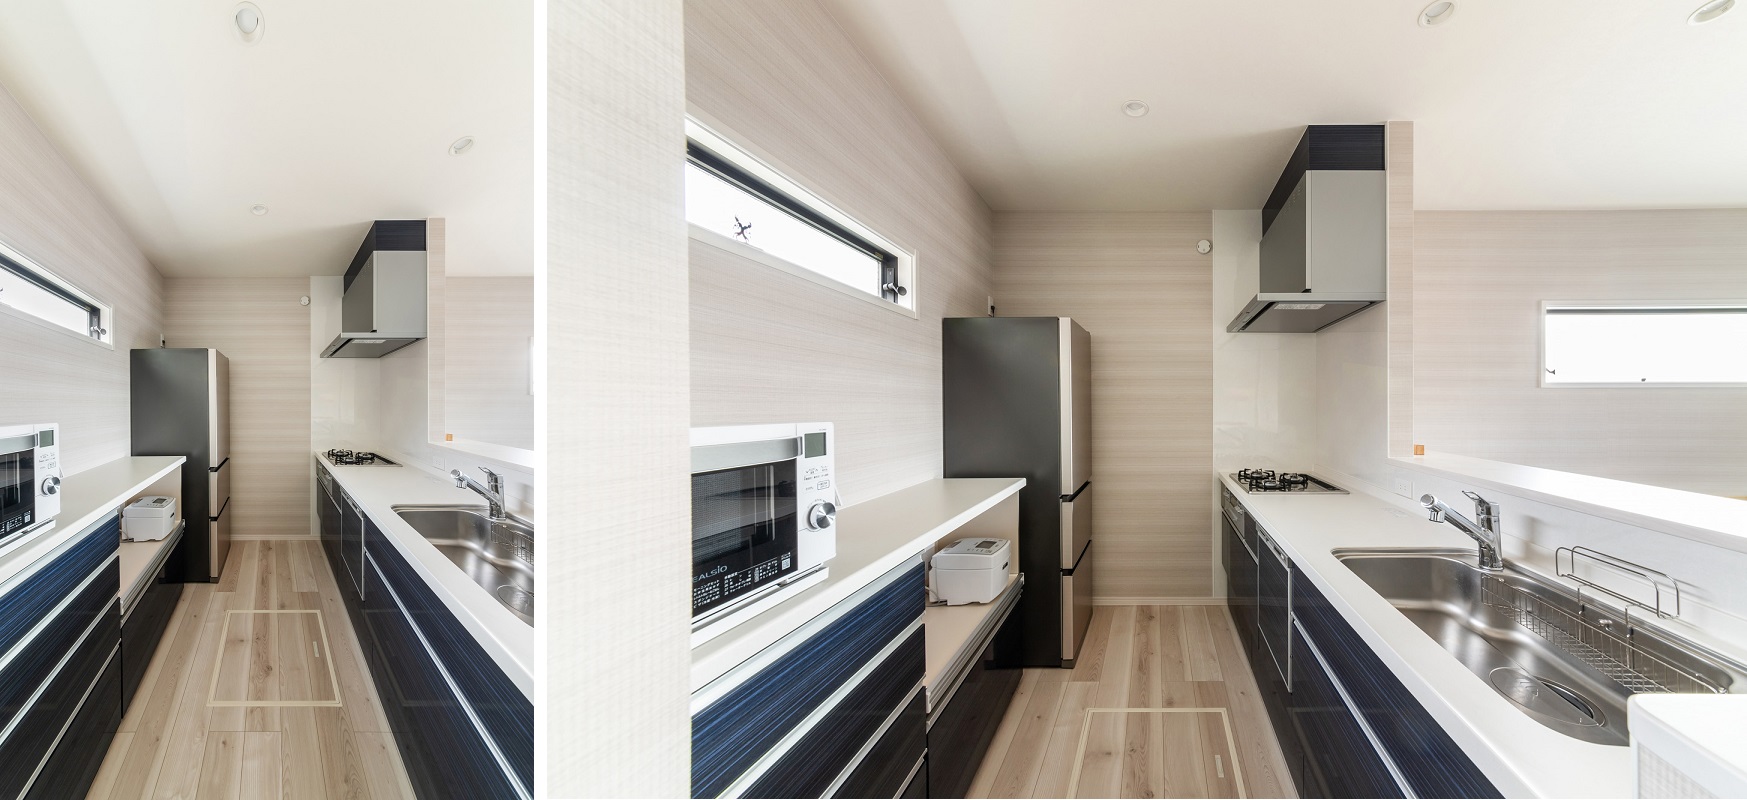 シンプルで機能的な対面式キッチンは、白の天板にネイビーのお色味がスタイリッシュでスマートな仕上がりに。収納棚も腰までの高さに統一している為、スッキリとした空間になっています。